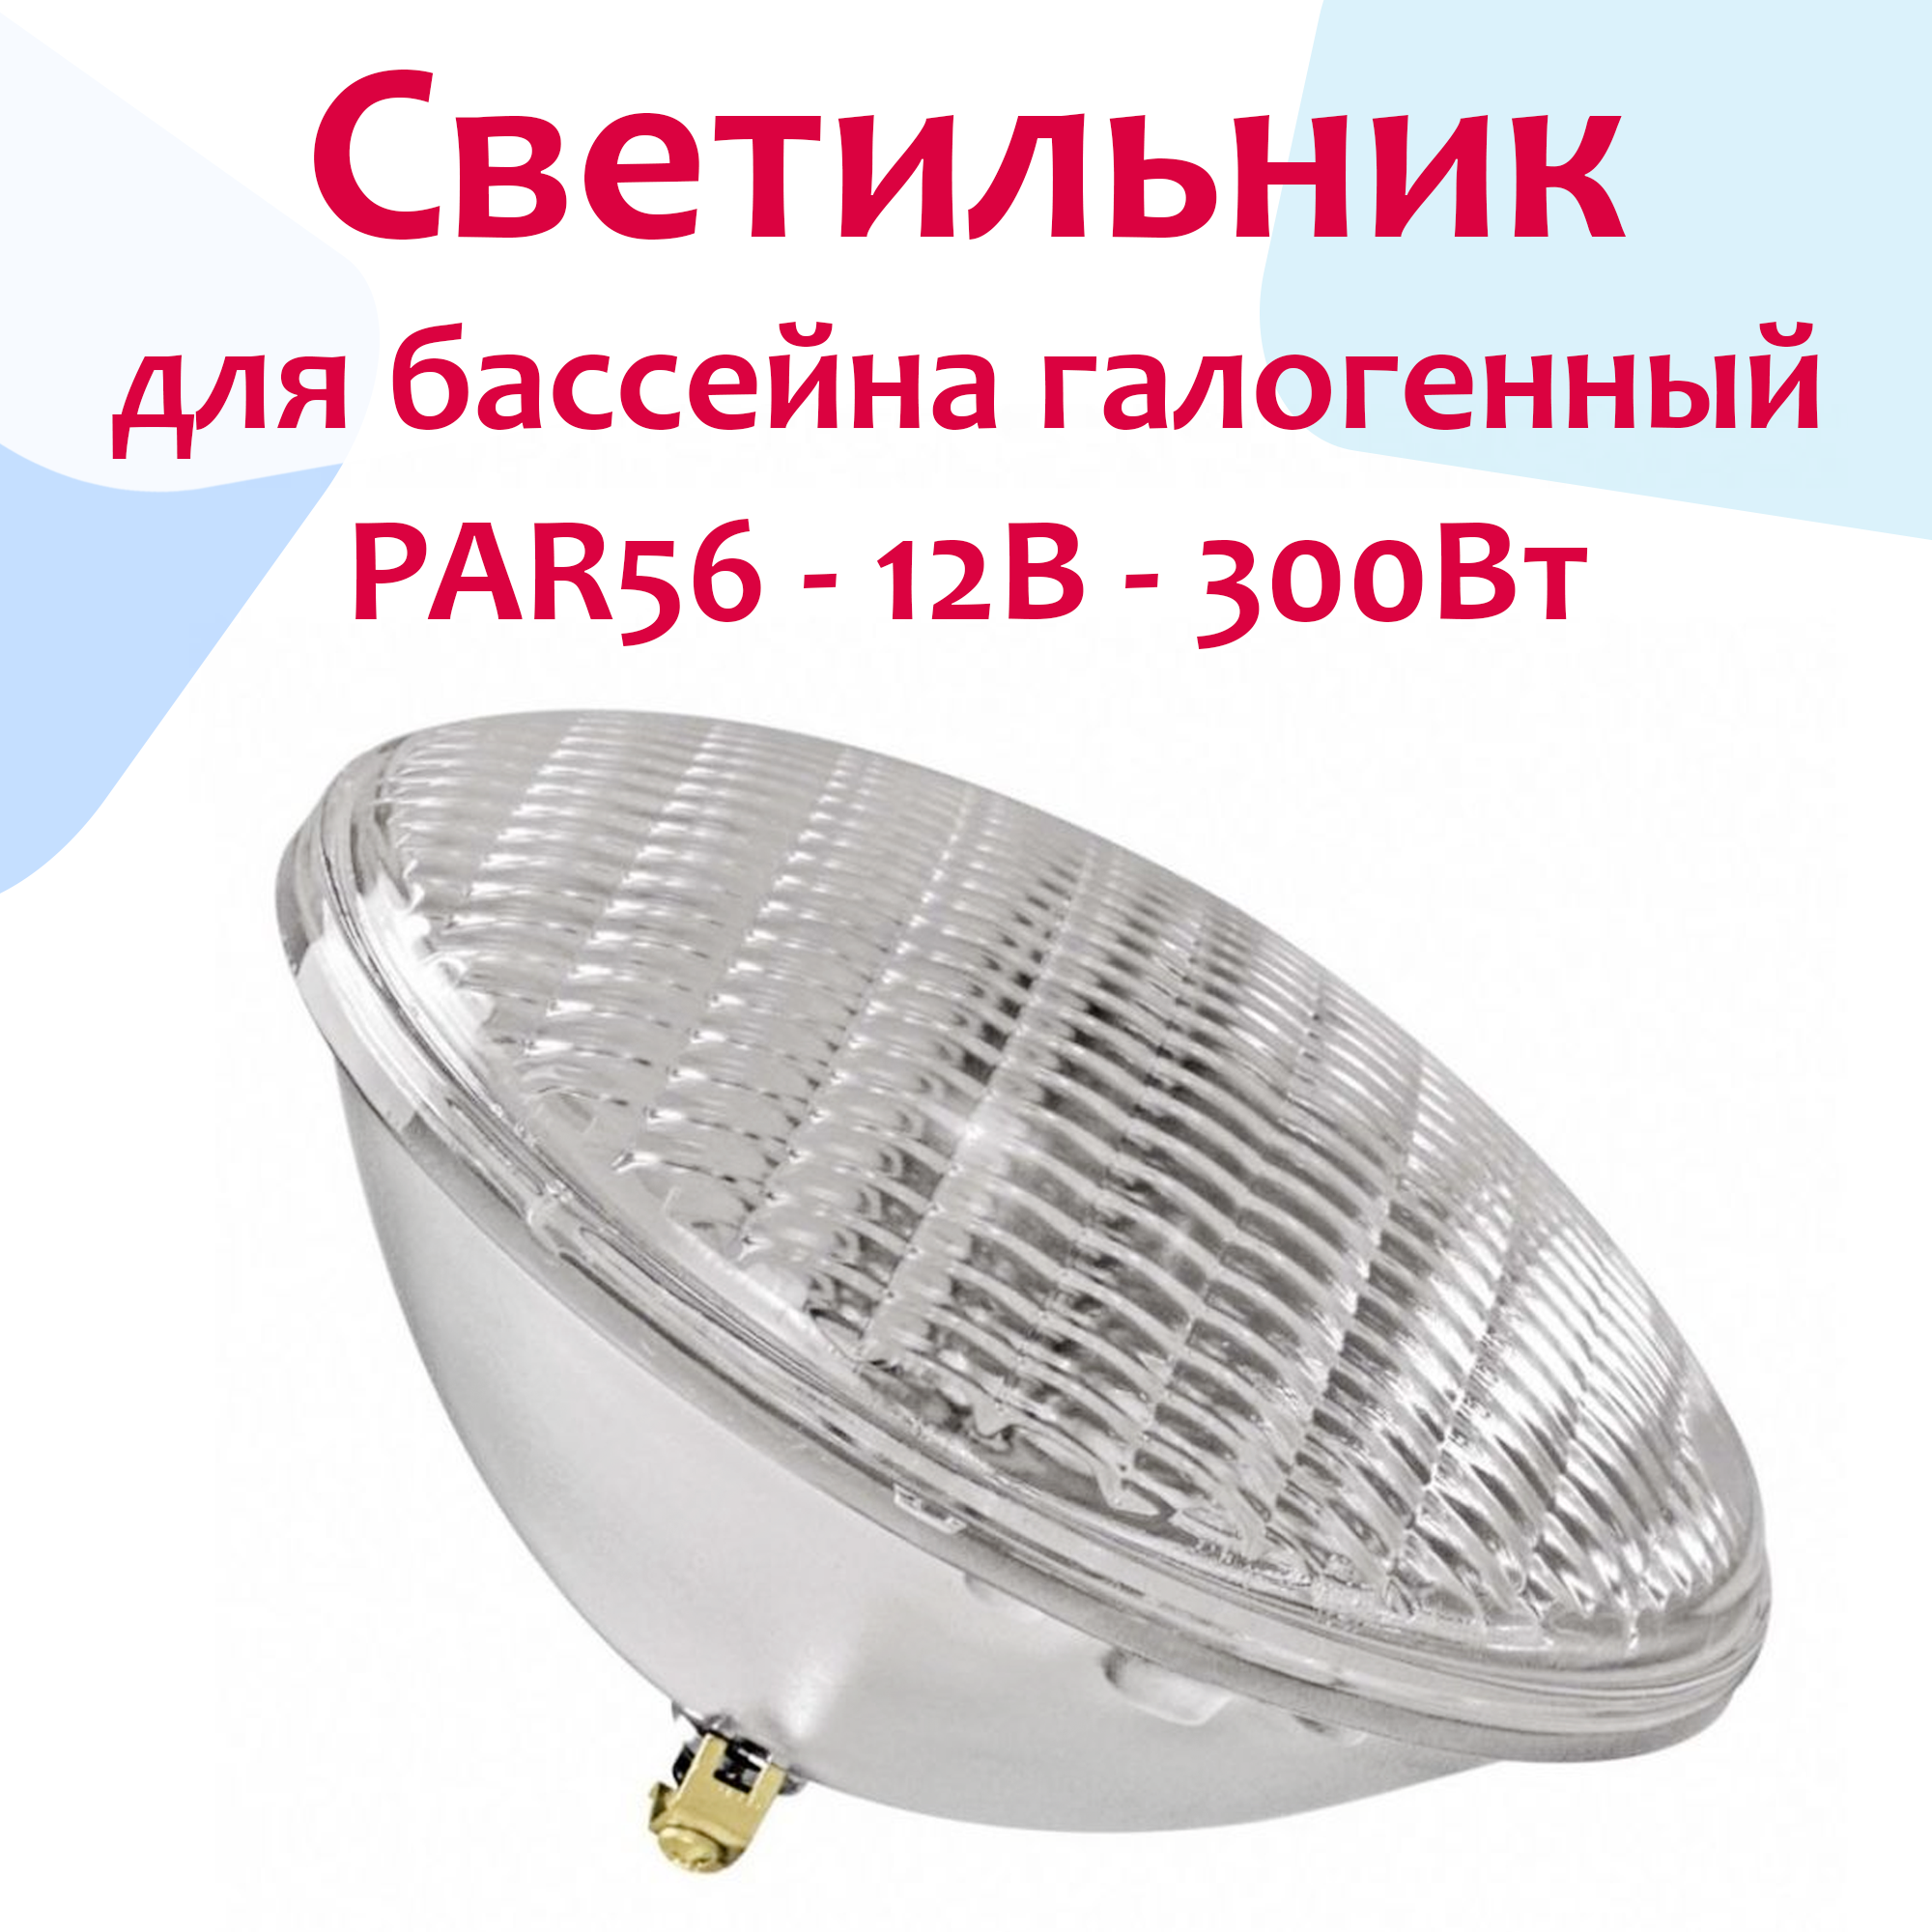 Светильник (прожектор) для бассейна галогенный PAR56 - 12В, 300Вт